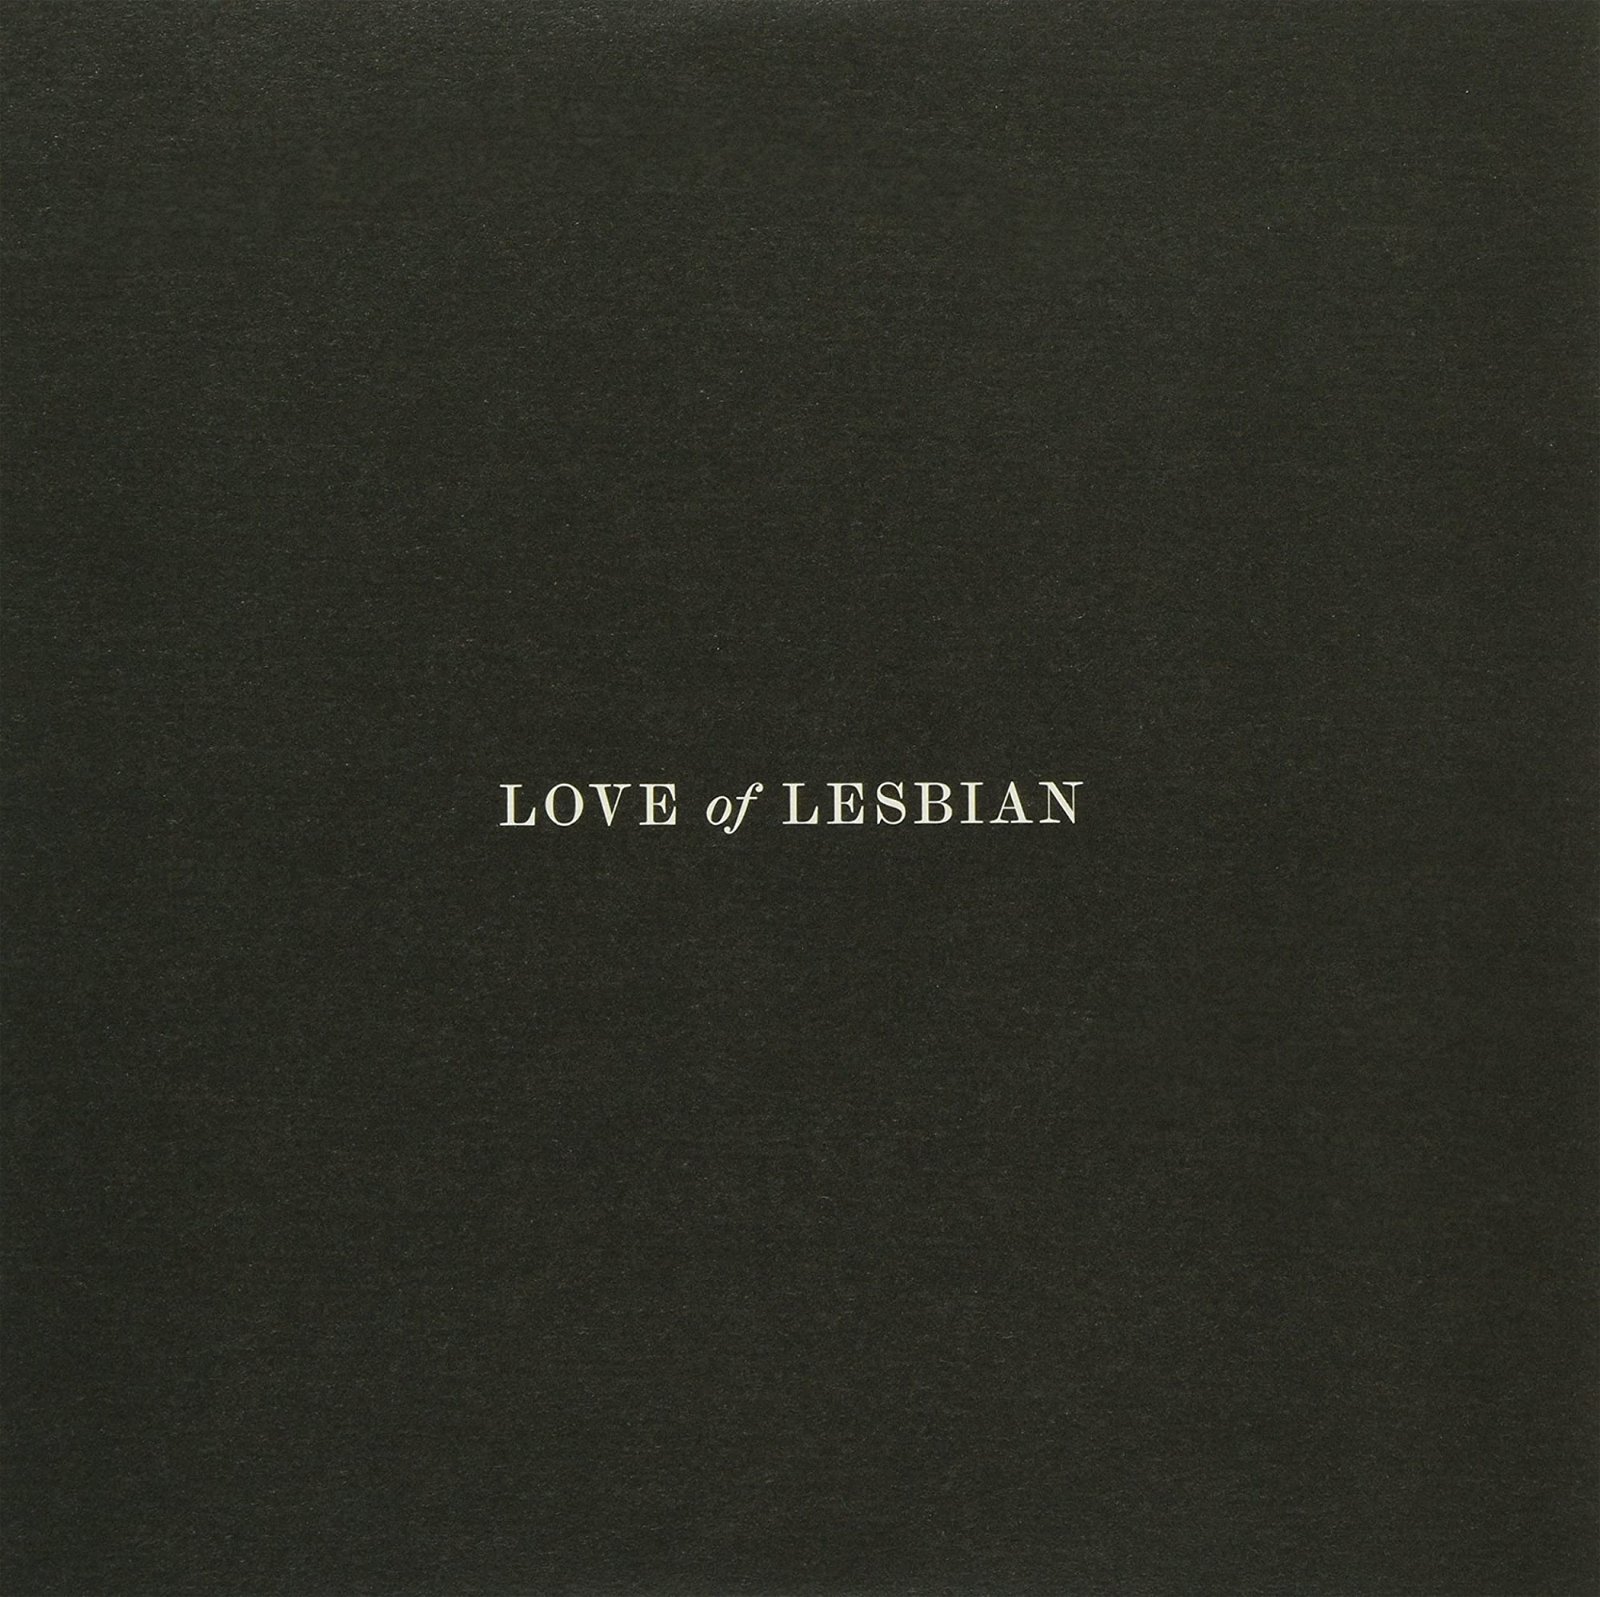 CD Shop - LOVE OF LESBIAN EL ASTRONAUTA QUE VIO A ELVIS